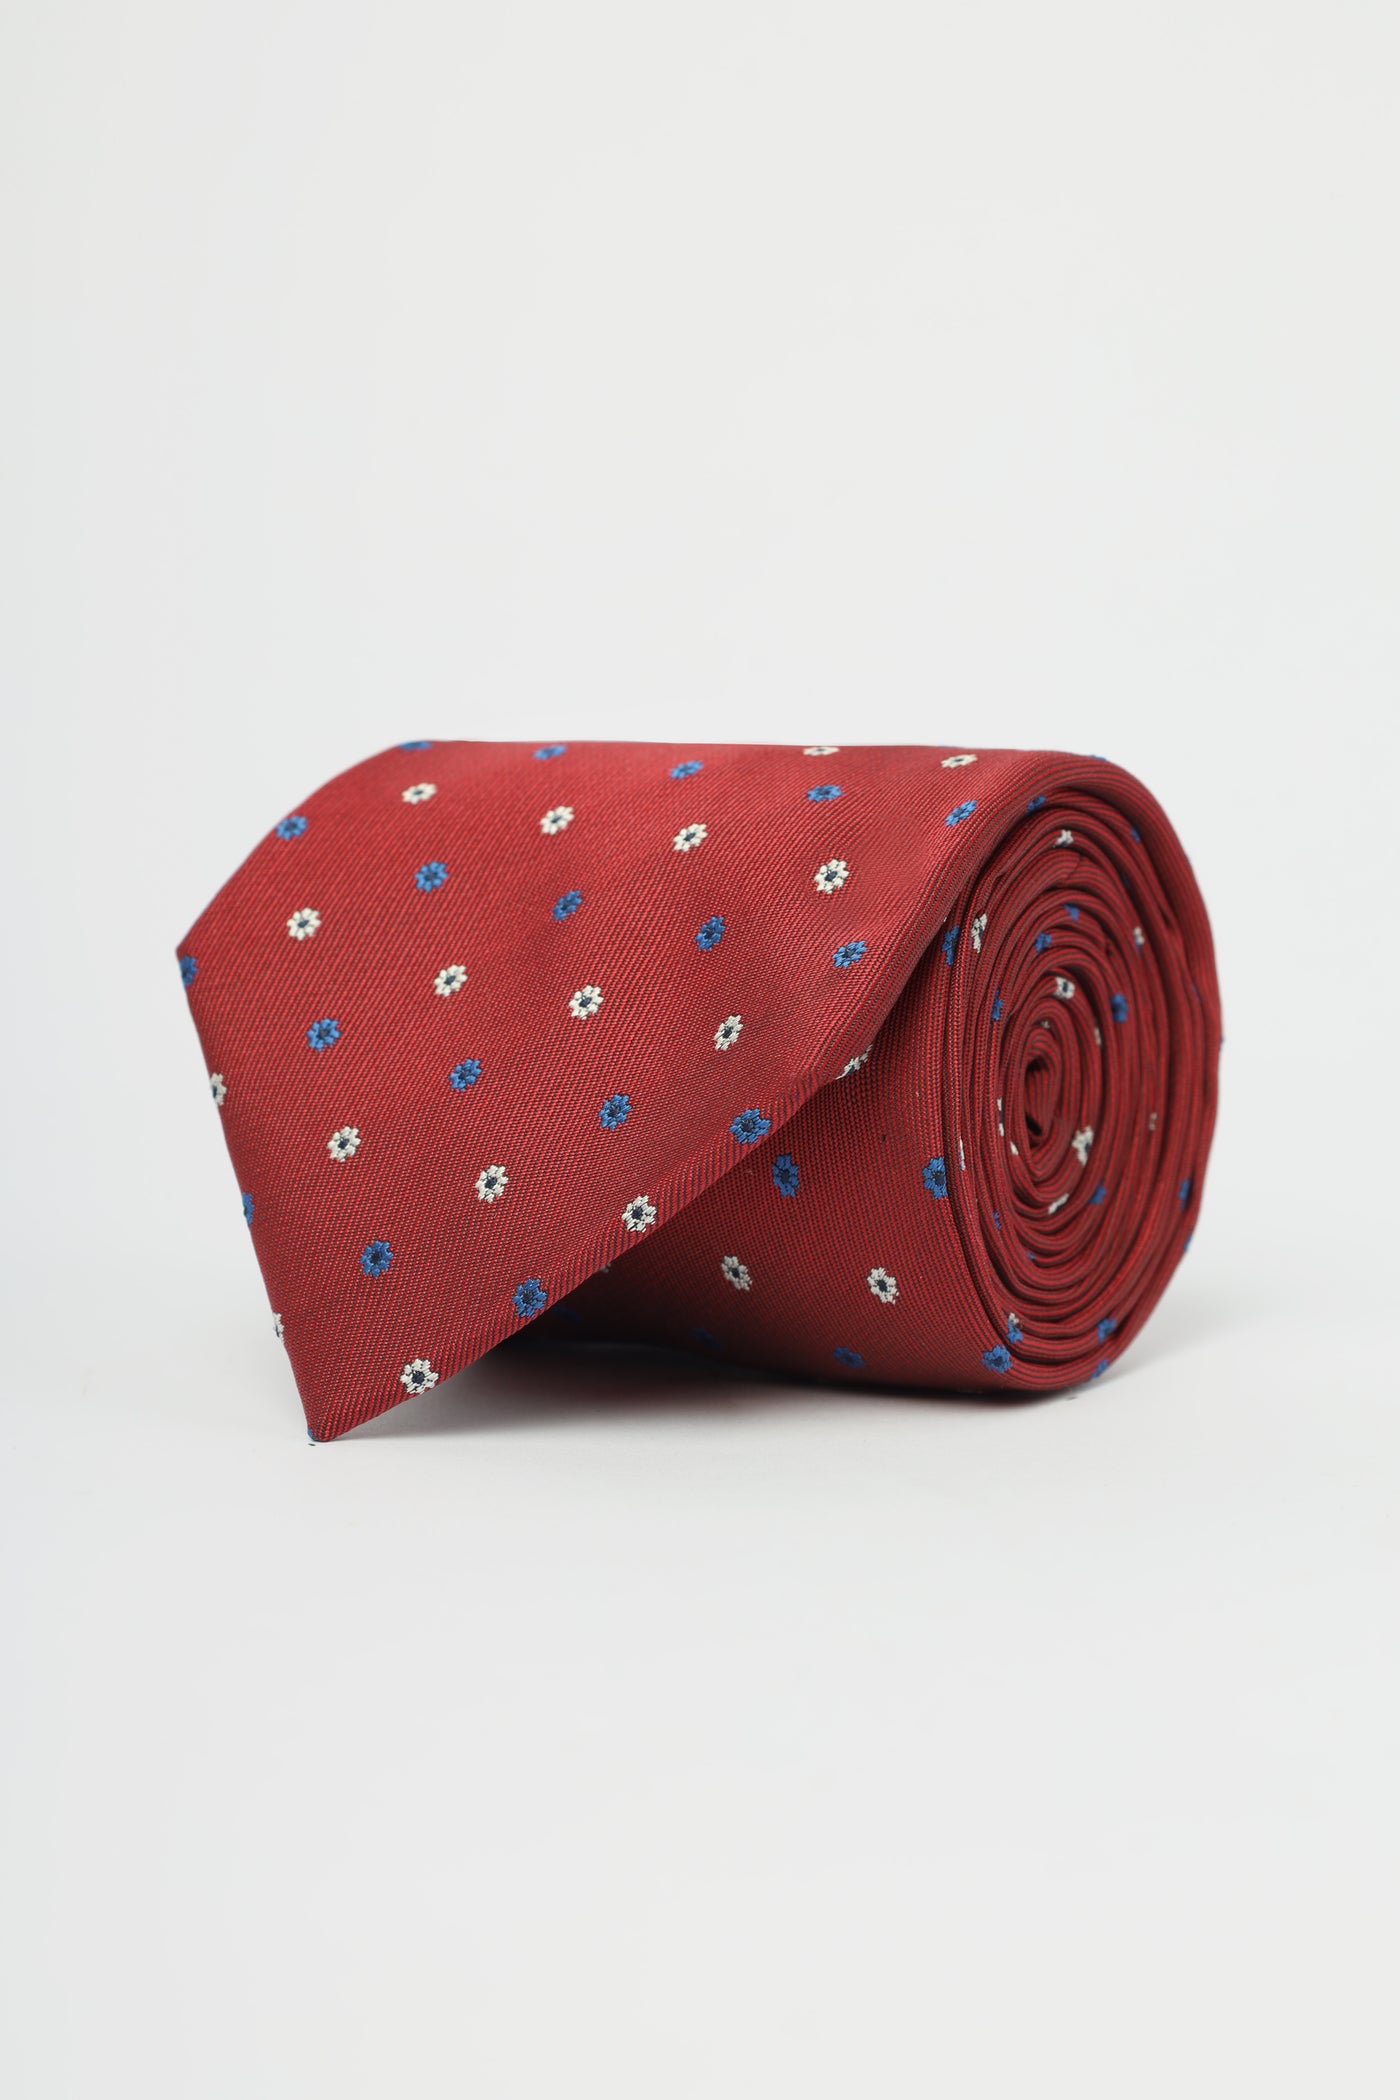 Floral pattered Auburn Red Silk Necktie